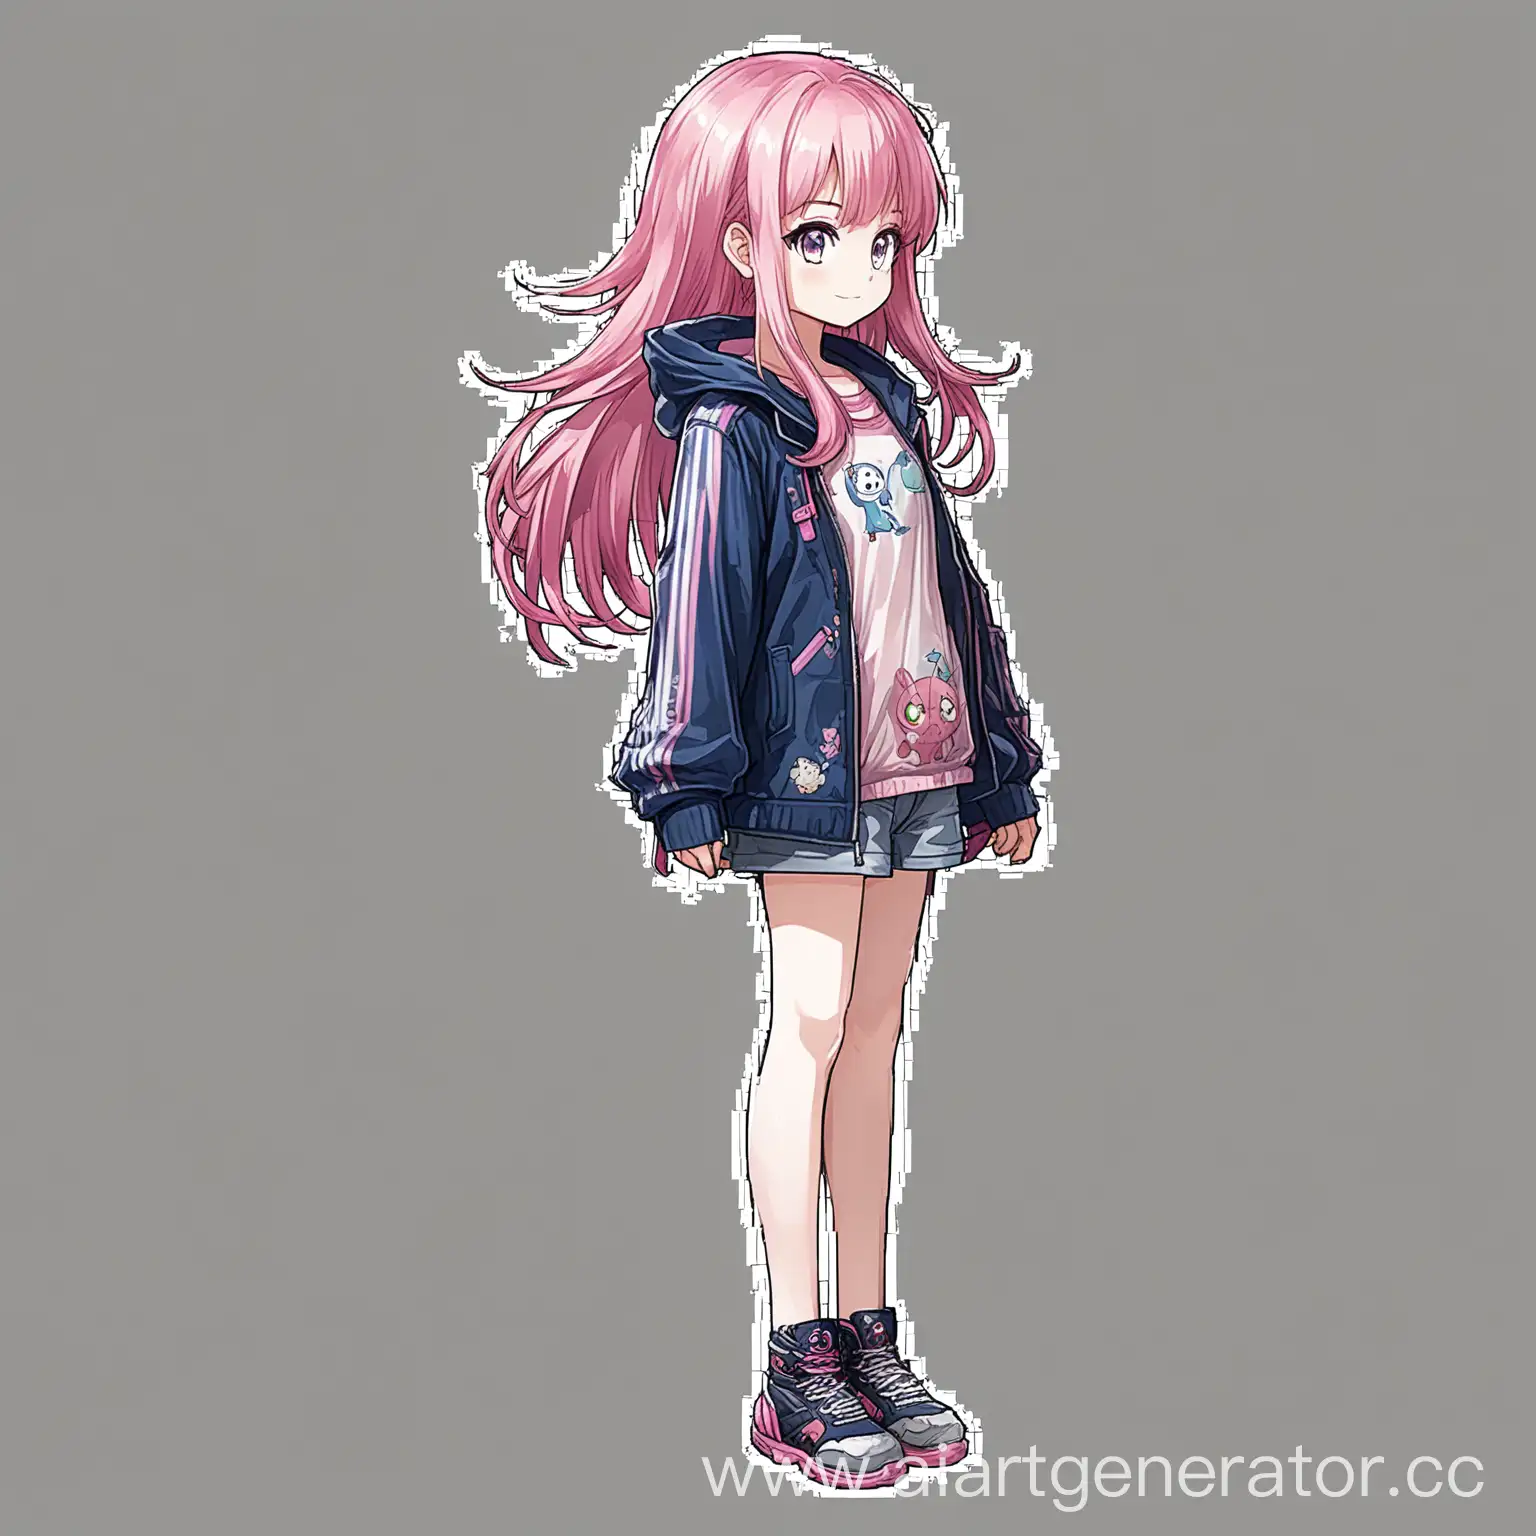 аниме персонаж для игры, на прозрачном фоне, 2д, вид сбоку, розовые волосы, рисунок художника, в полный рост
